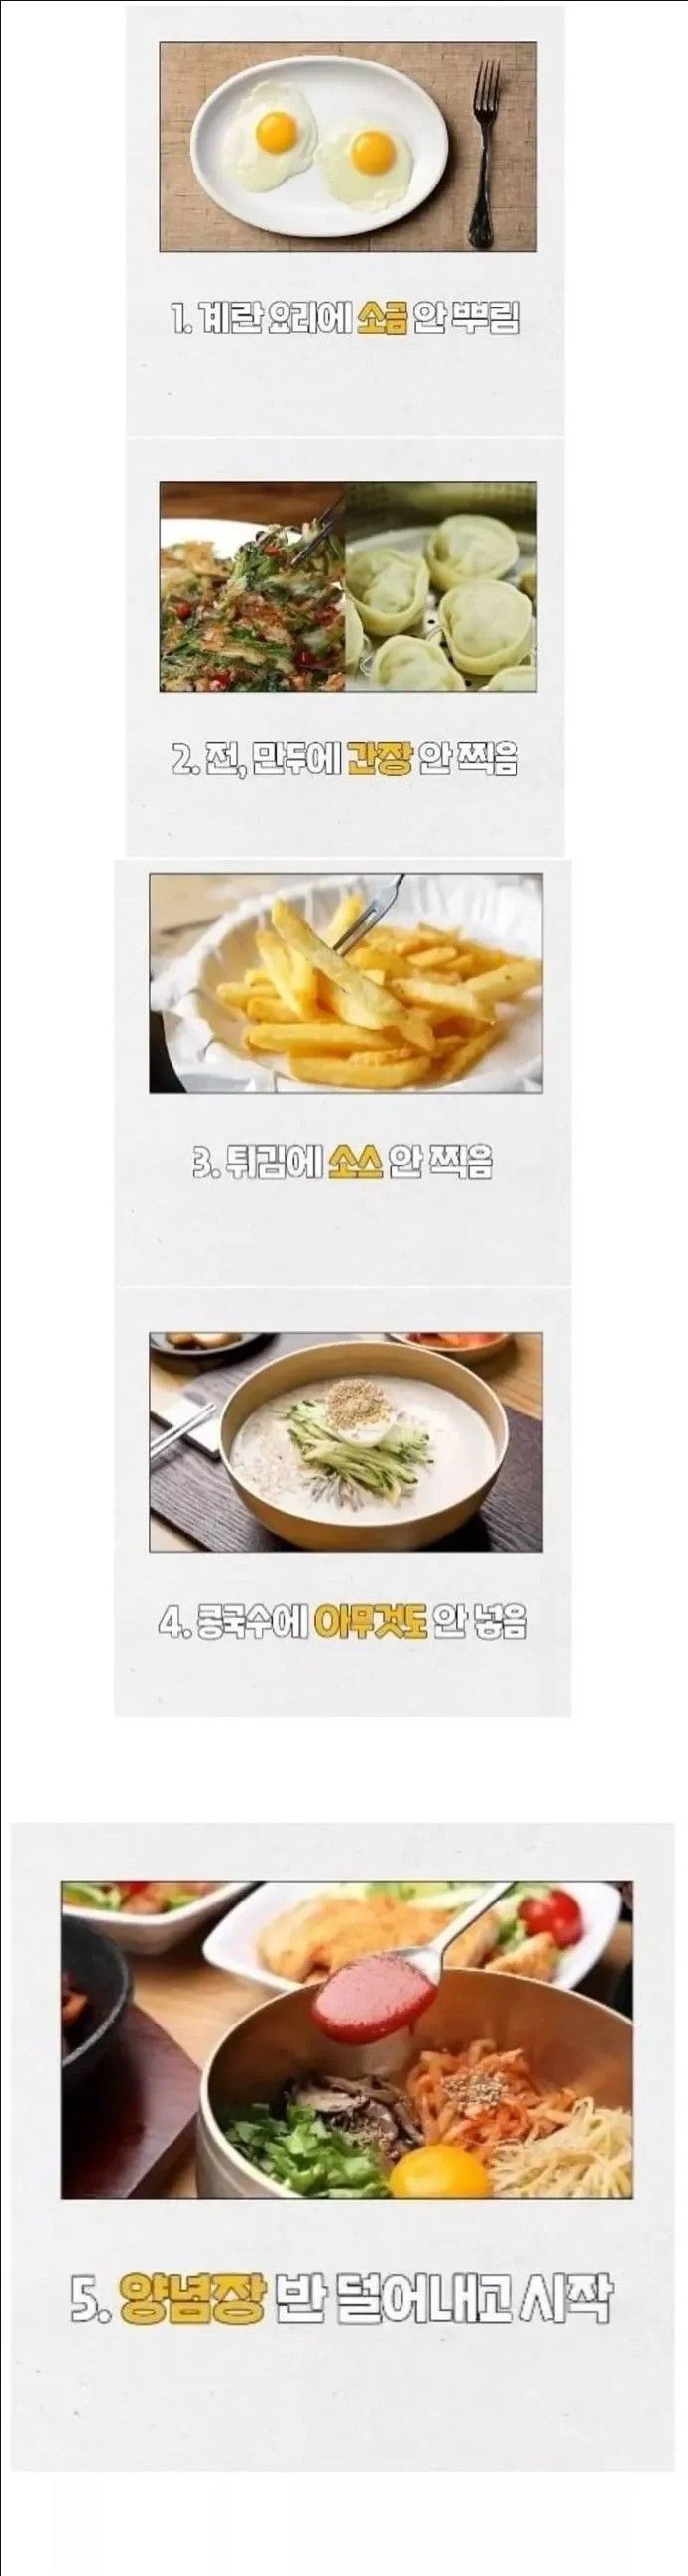 한국인들 사이에 꽤 있다는 식성